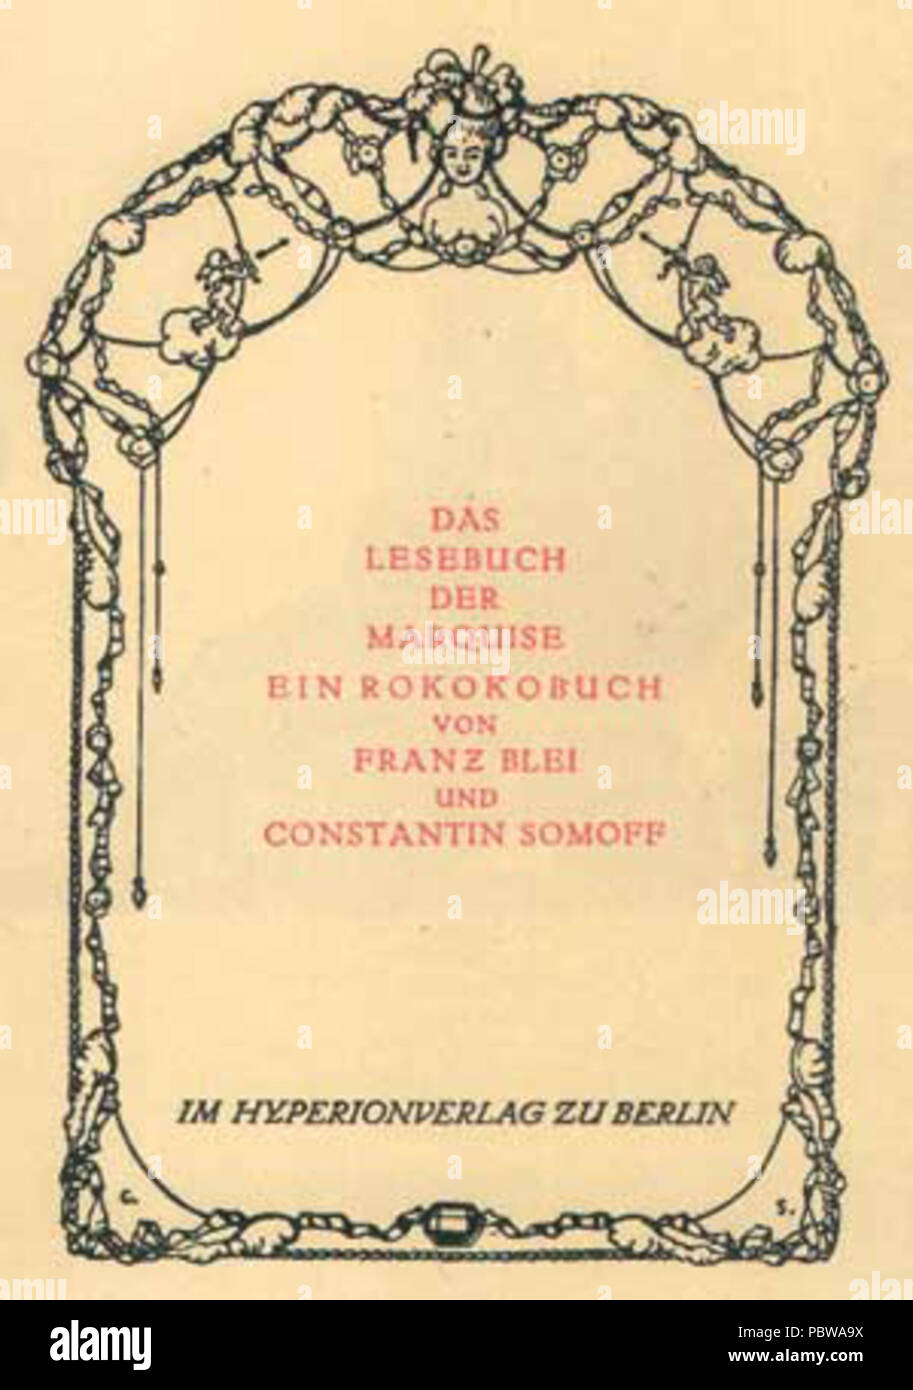 153 Das Lesebuch der Marquise (cover) 02 Stock Photo